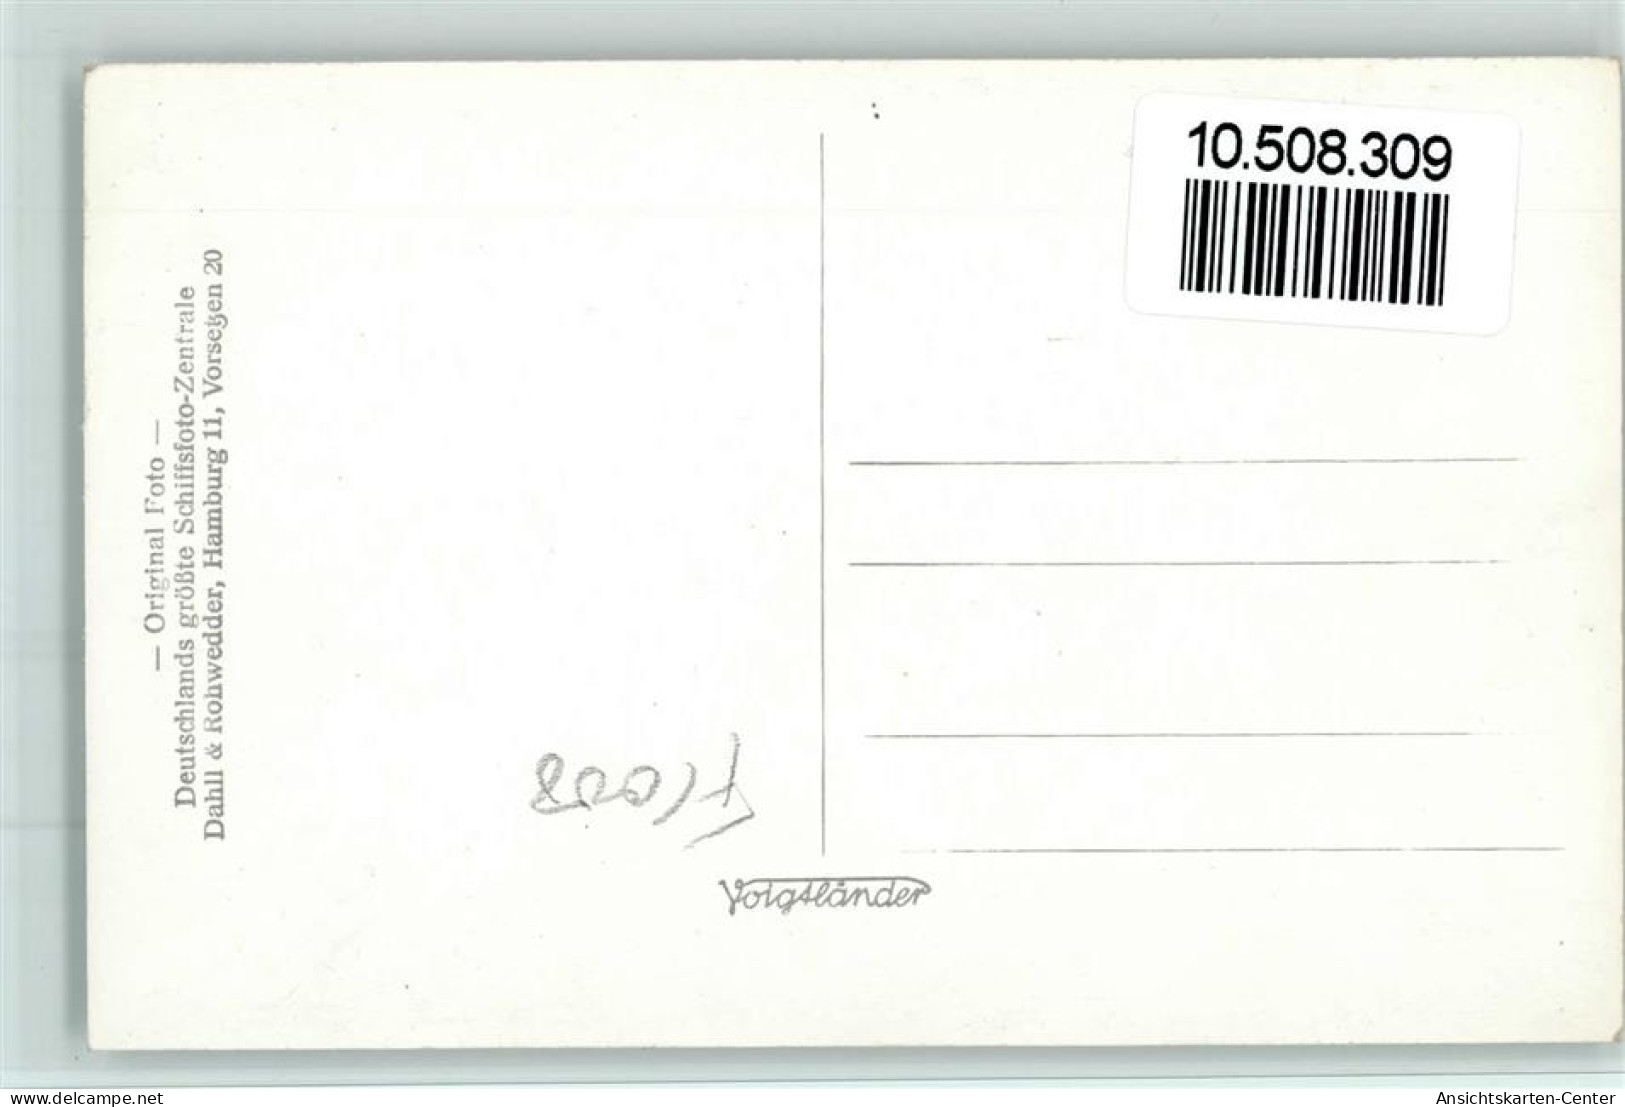 10508309 - Norddeutscher Lloyd Kronprinzessin Cecilie - Steamers